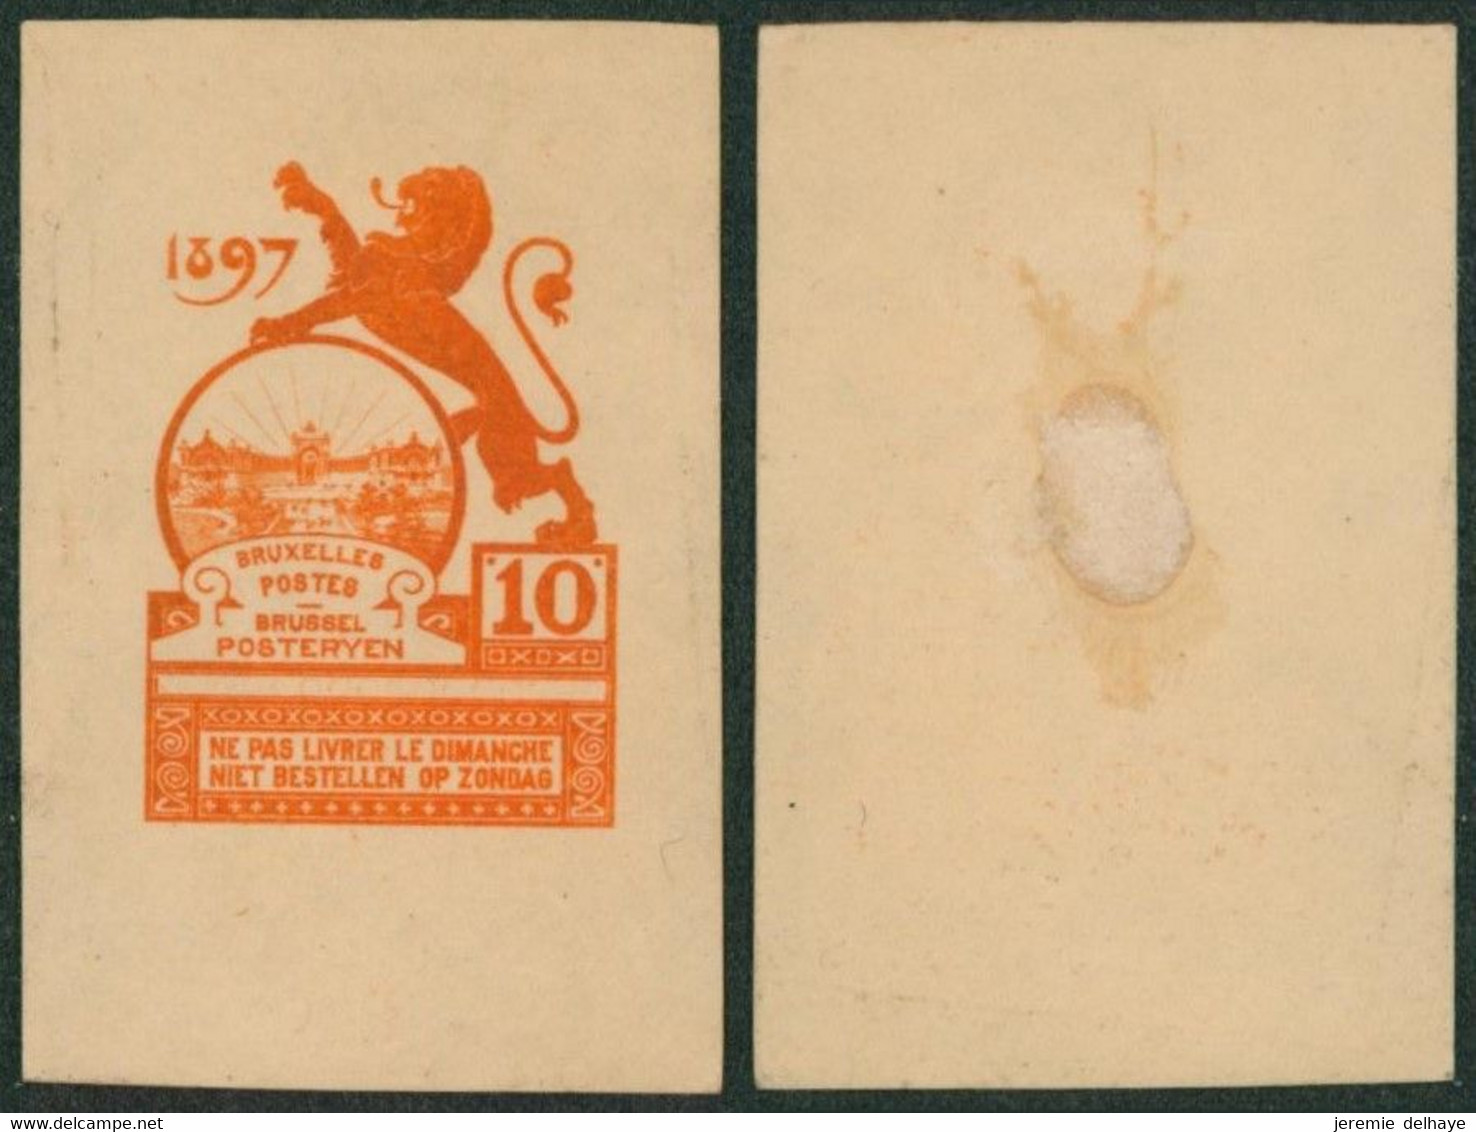 Essai - Proposition Du Peintre Louis Titz (Bruxelles Expositions 1897) Sur Papier Japon épais (1 Couleur) : STES 2230 - Proeven & Herdruk